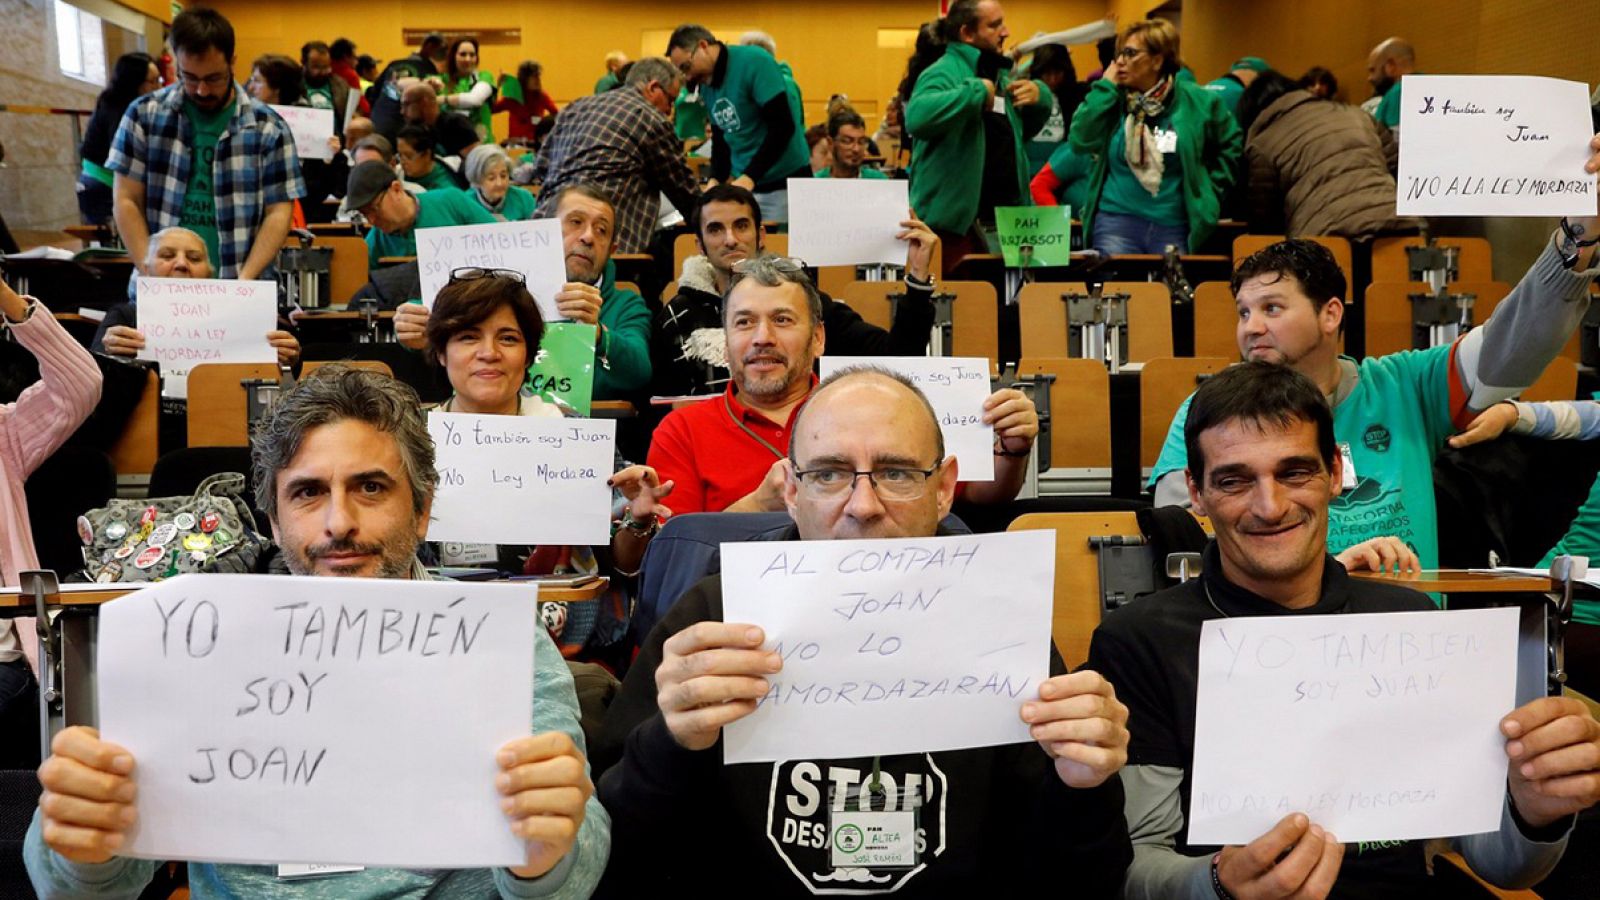 Miembros de la Plataforma de Afectados por la Hipoteca (PAH) muestran carteles con el lema "Yo también soy Joan" al finalizar su asamblea estatal en Valencia. EFE/Kai Försterling